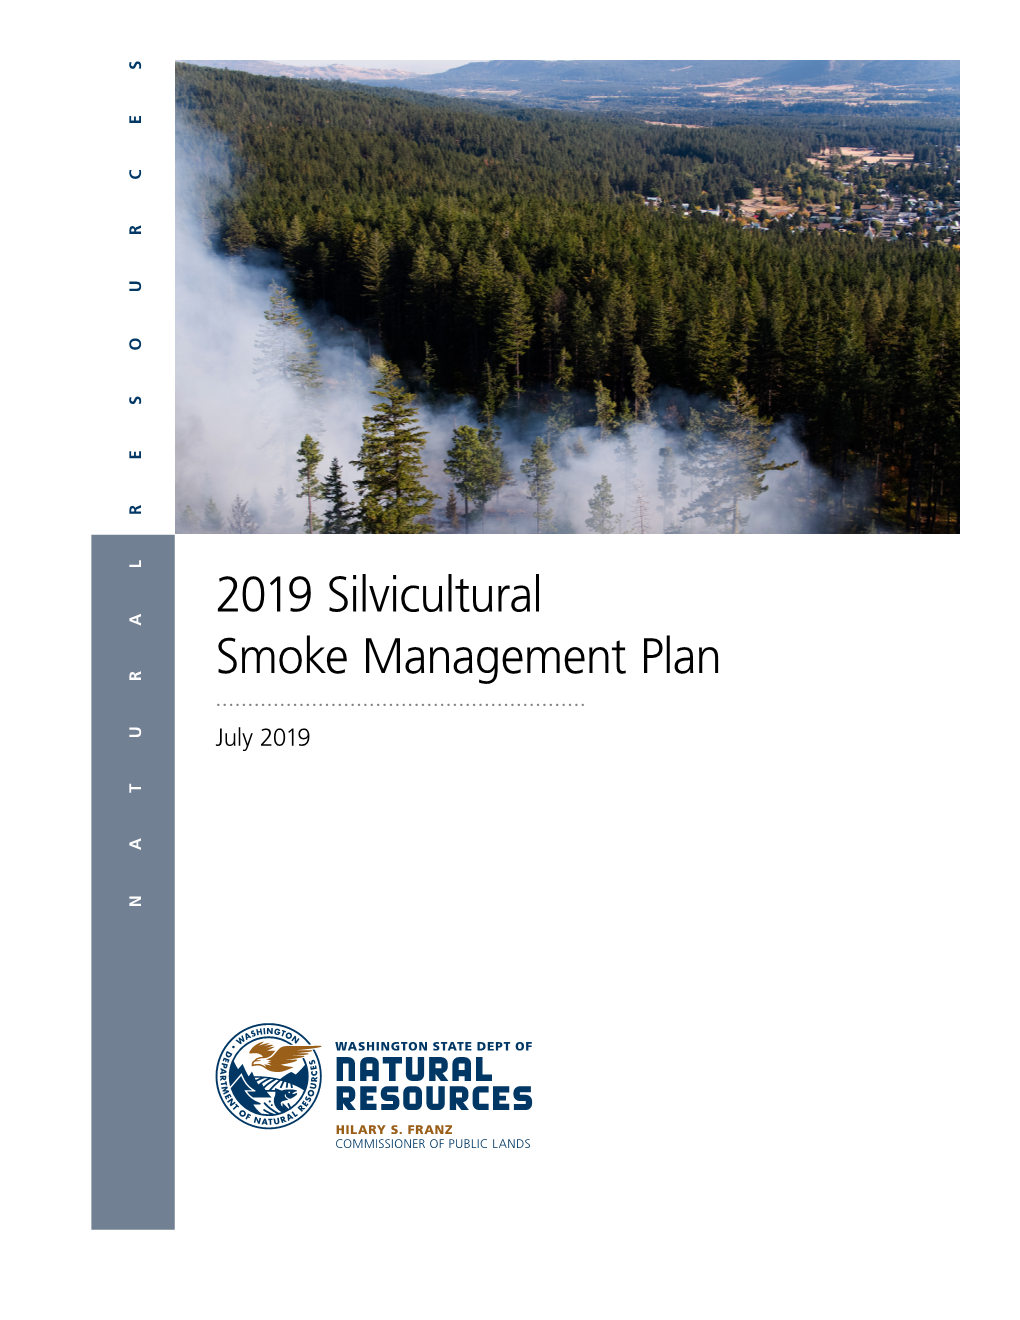 Smoke Management Plan